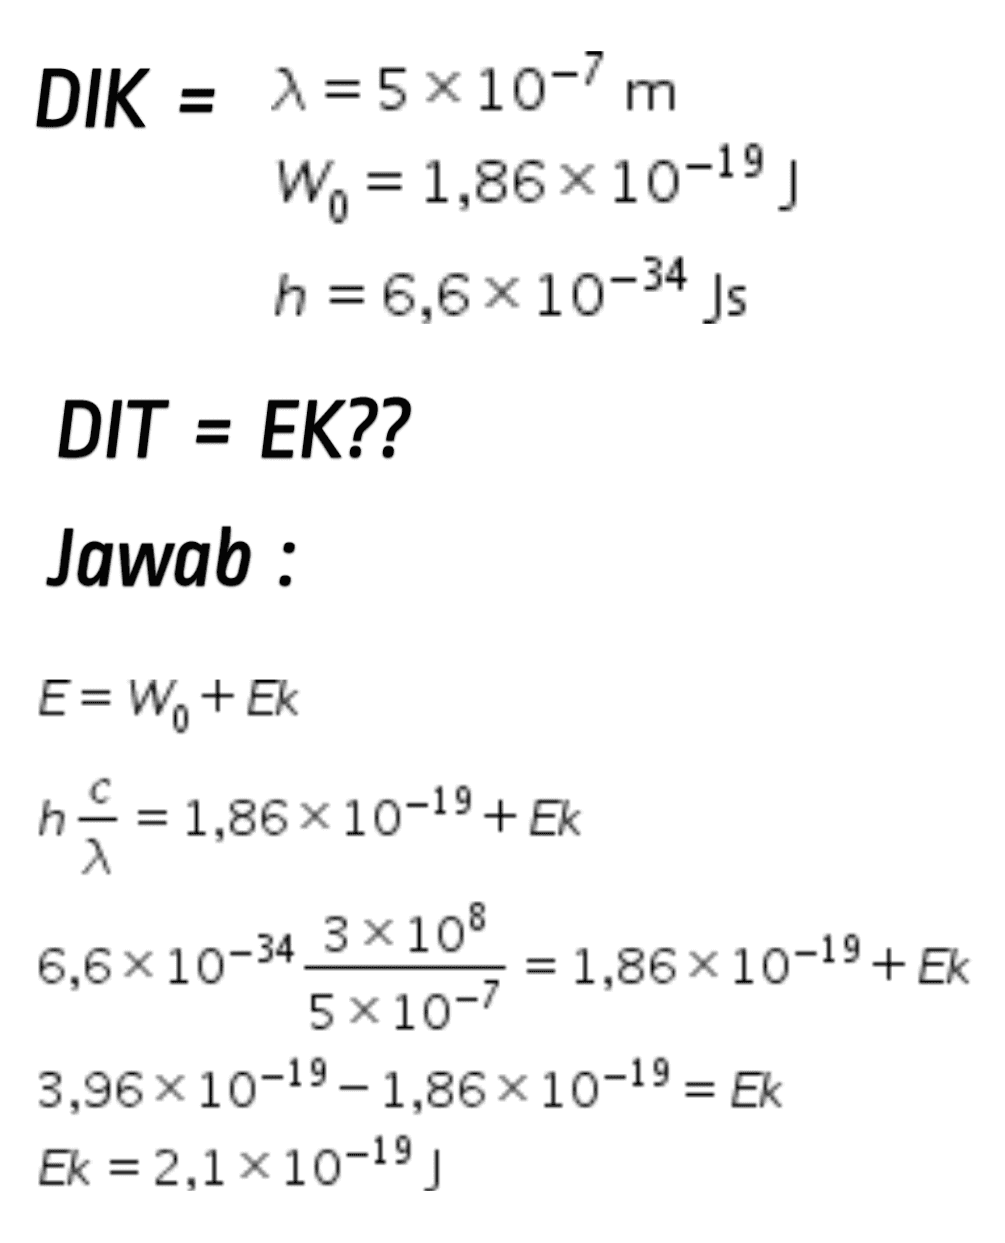 2 E=W. + Ek ne = 1,86x10-19+ EK 뜻 3 = 1,86 x 10-19 + EK 5*10-7 3,96 x 10-19 - 1,86 x 10-19 = Ek Ek = 2,1 10-19) 6,6x10-34 3x108 